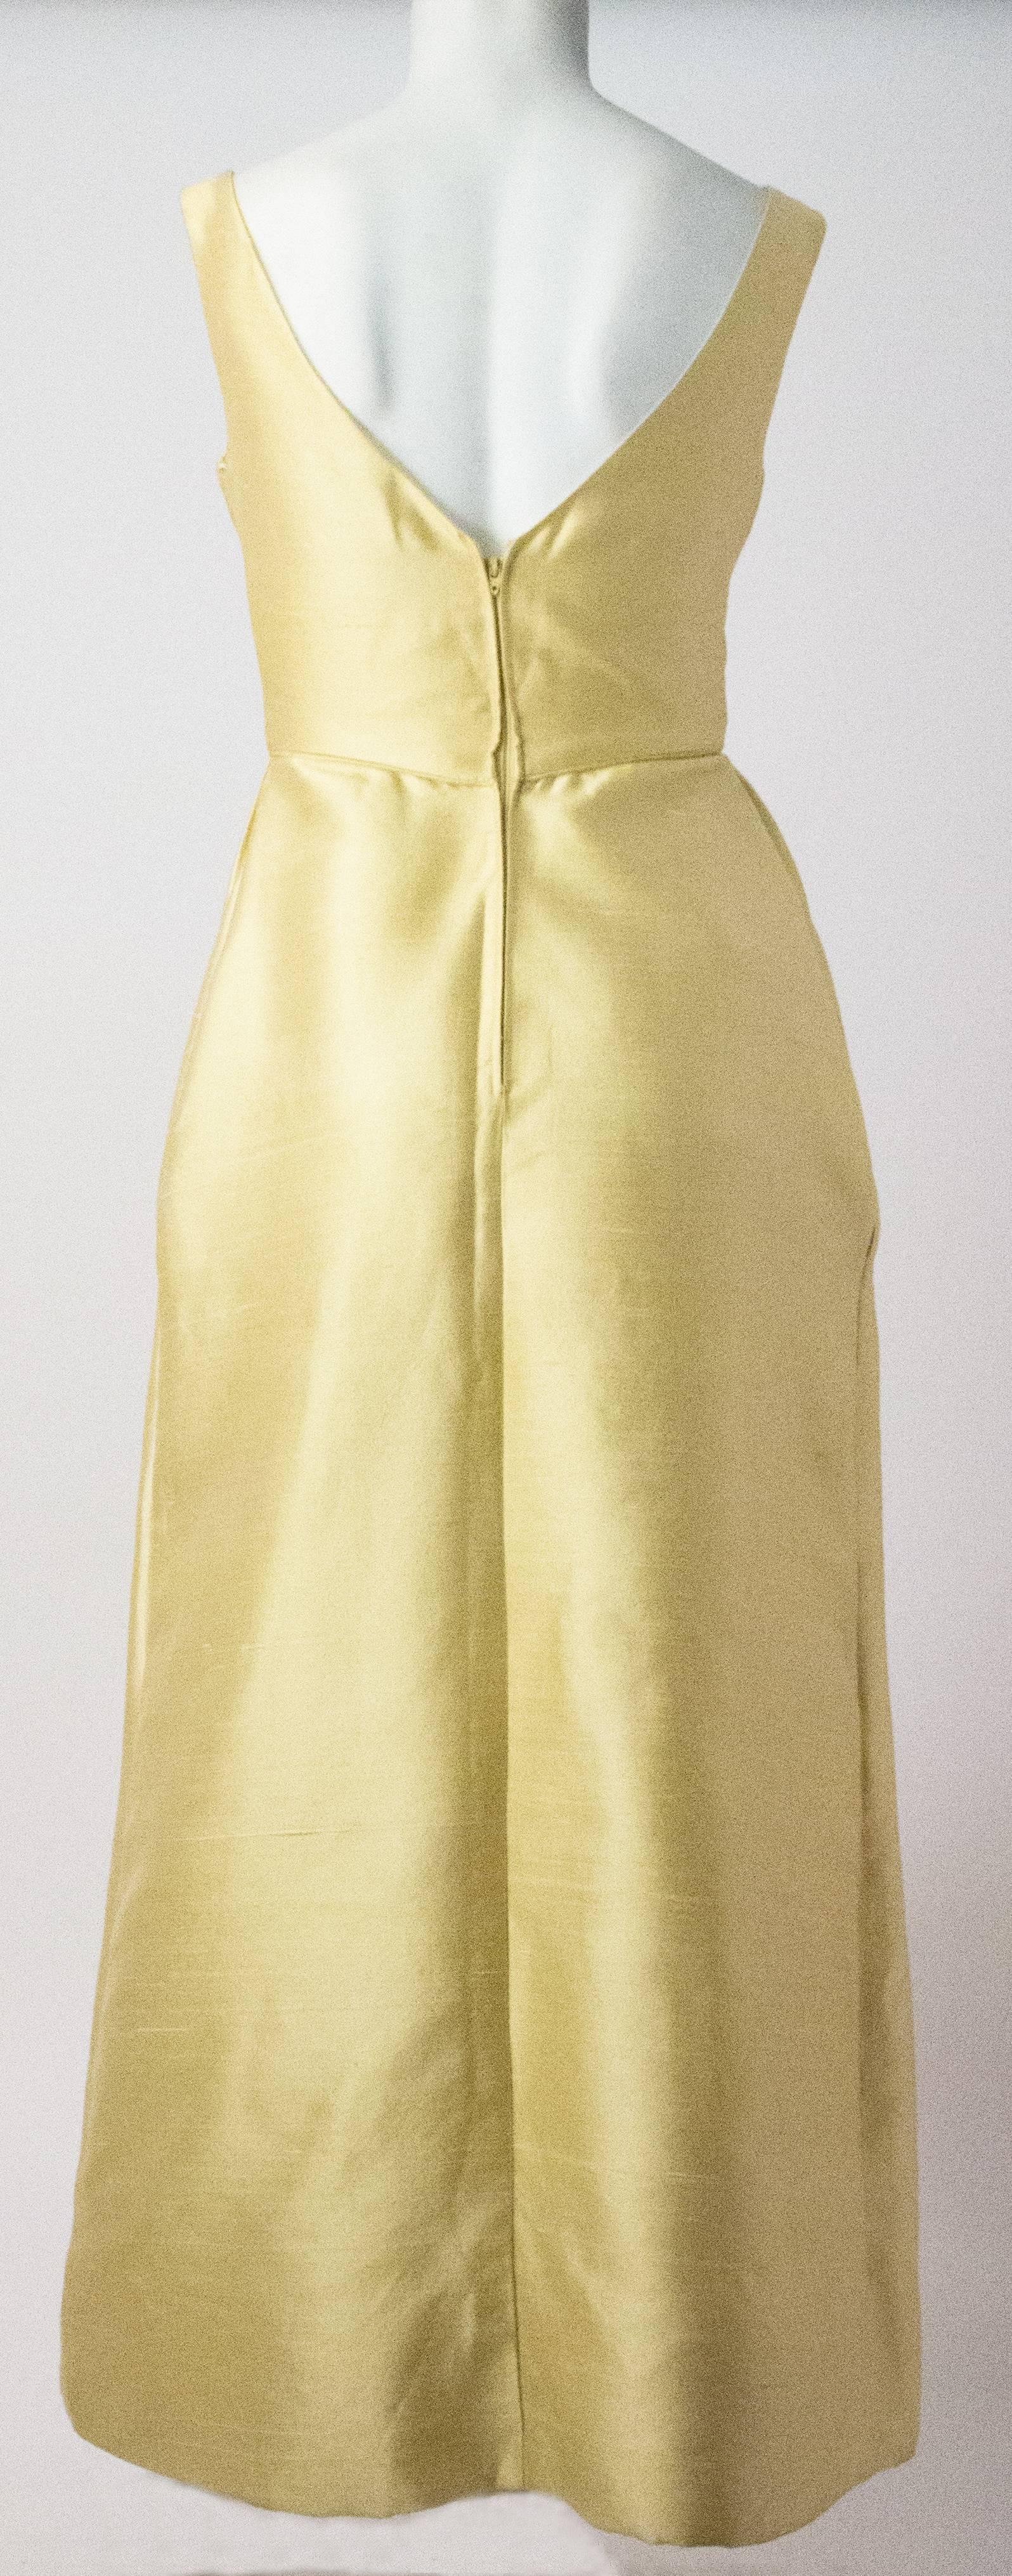 1960s buttercup yellow silk evening dress.
